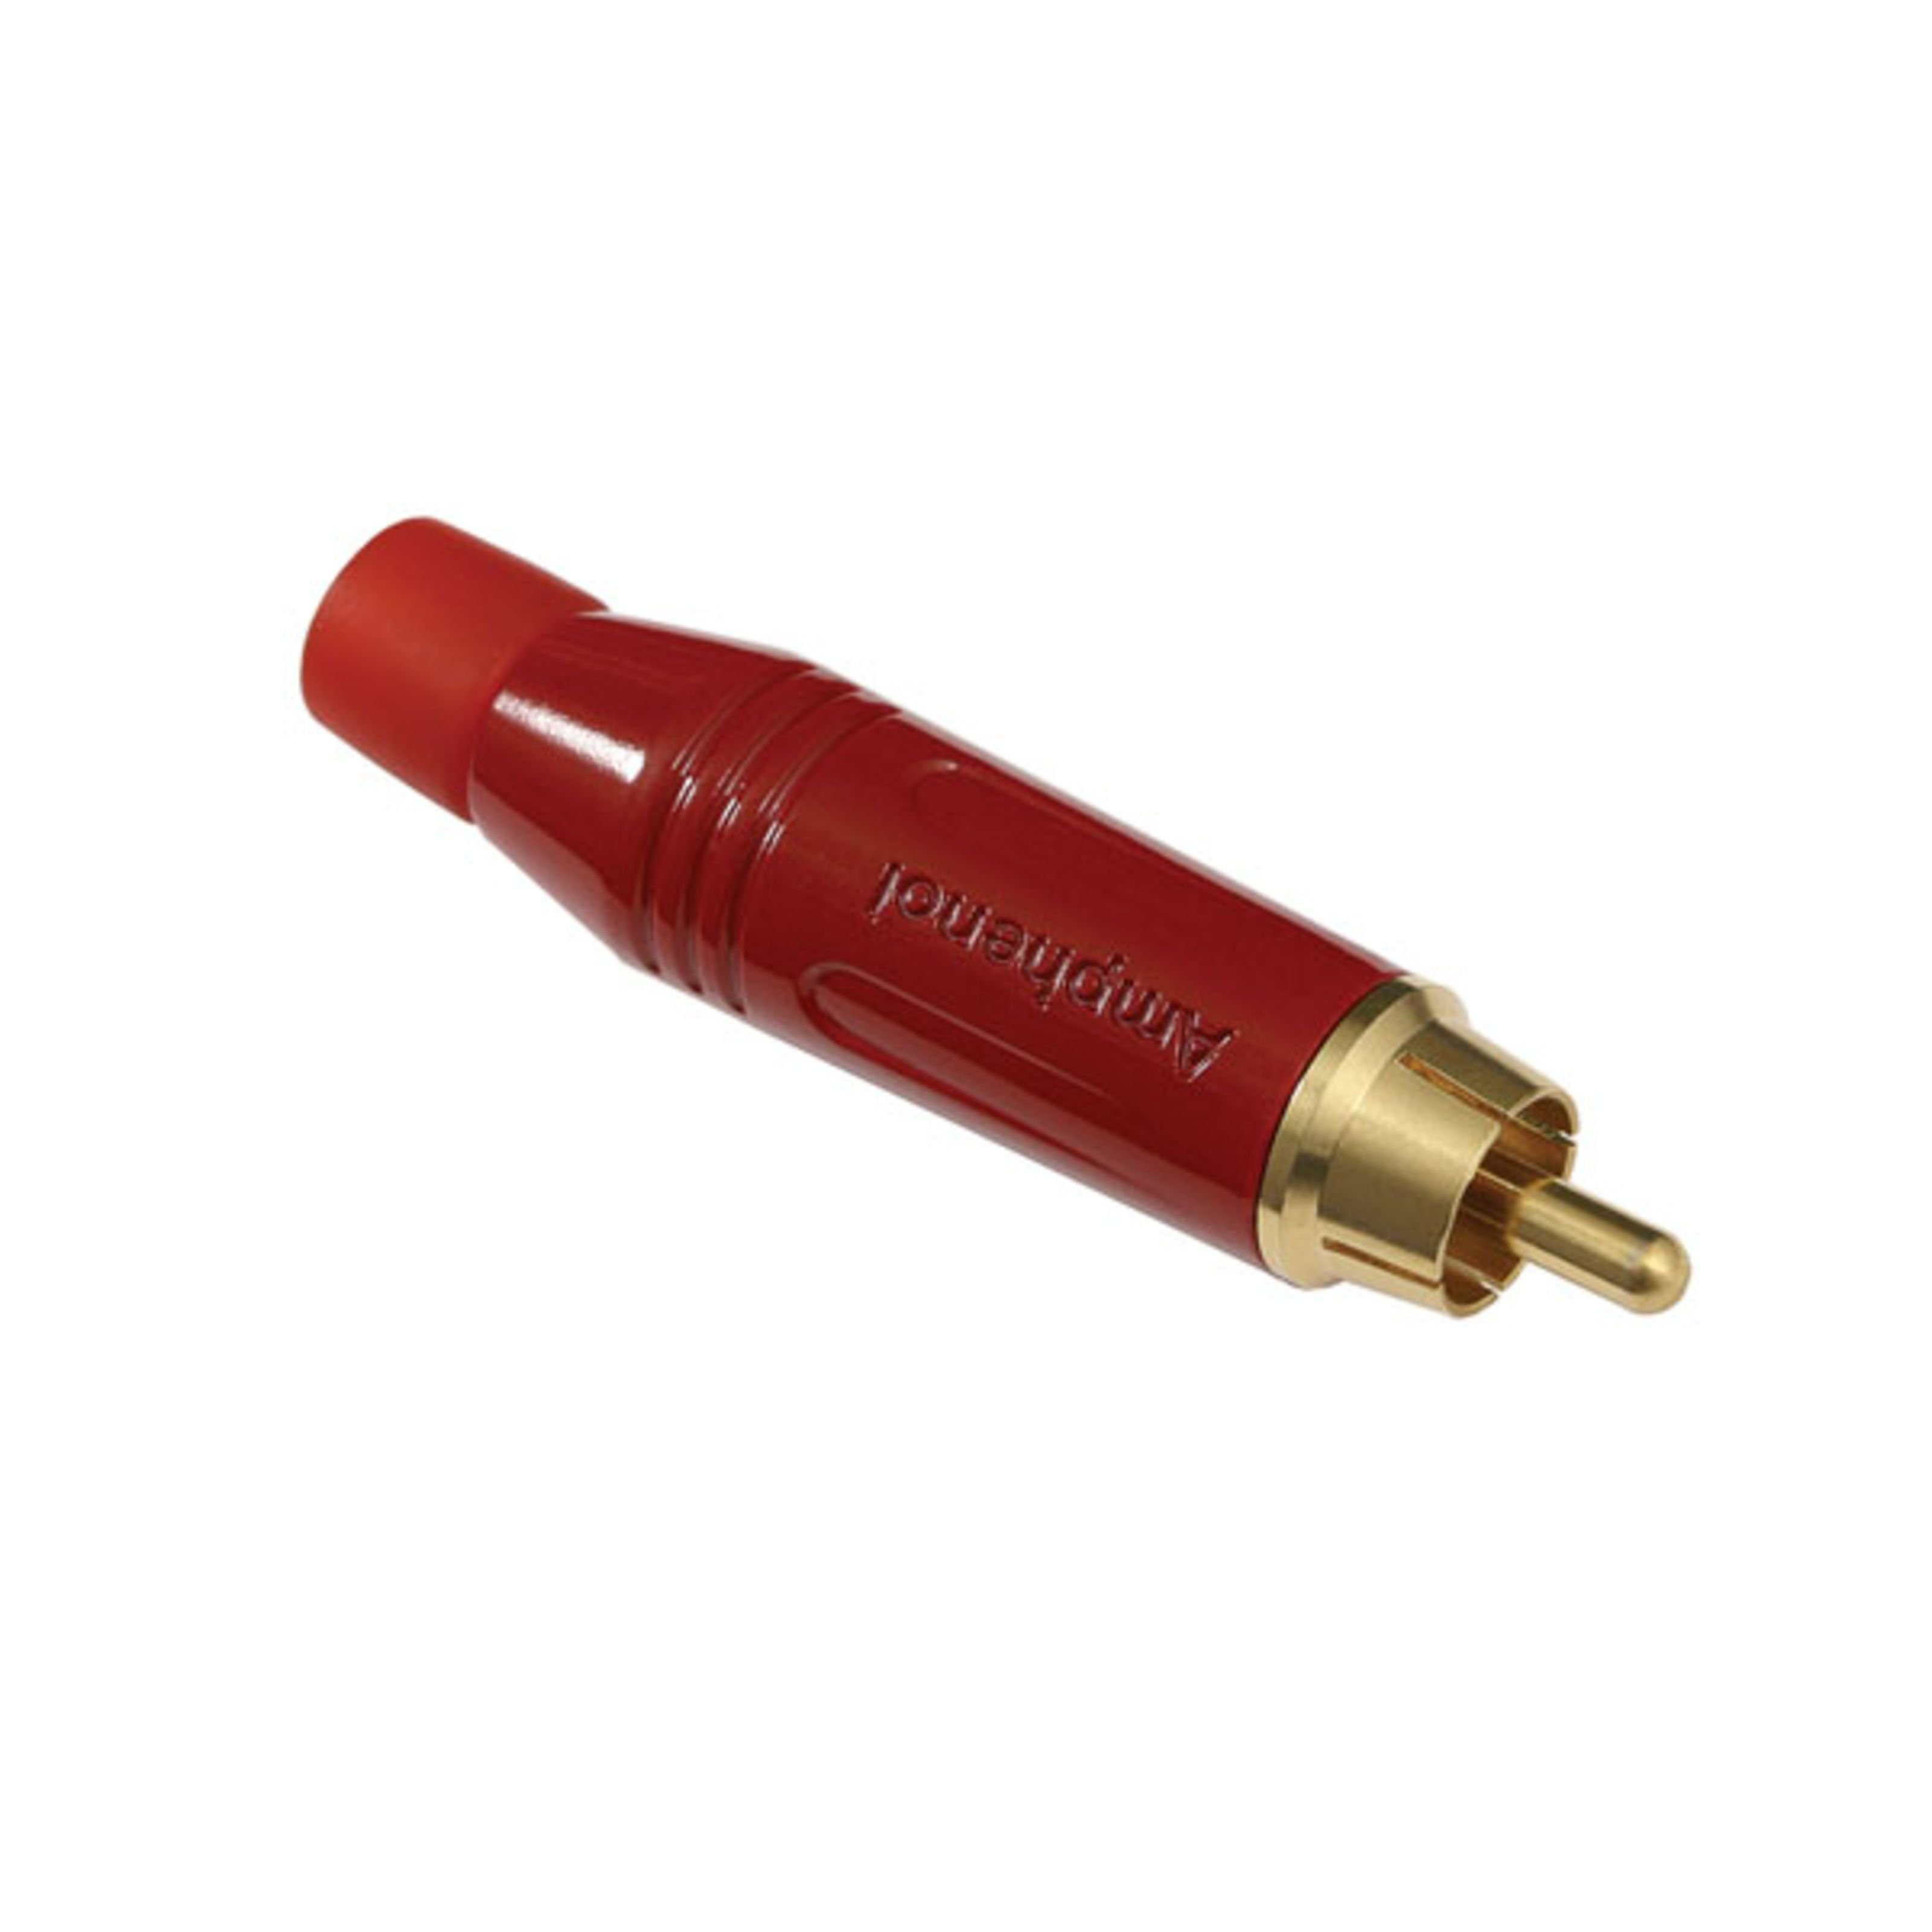 Amphenol Cinch-Stecker, (Stecker & Adapter, Kabel-Stecker), ACPR-RED Cinchstecker rot - Kabel Stecker